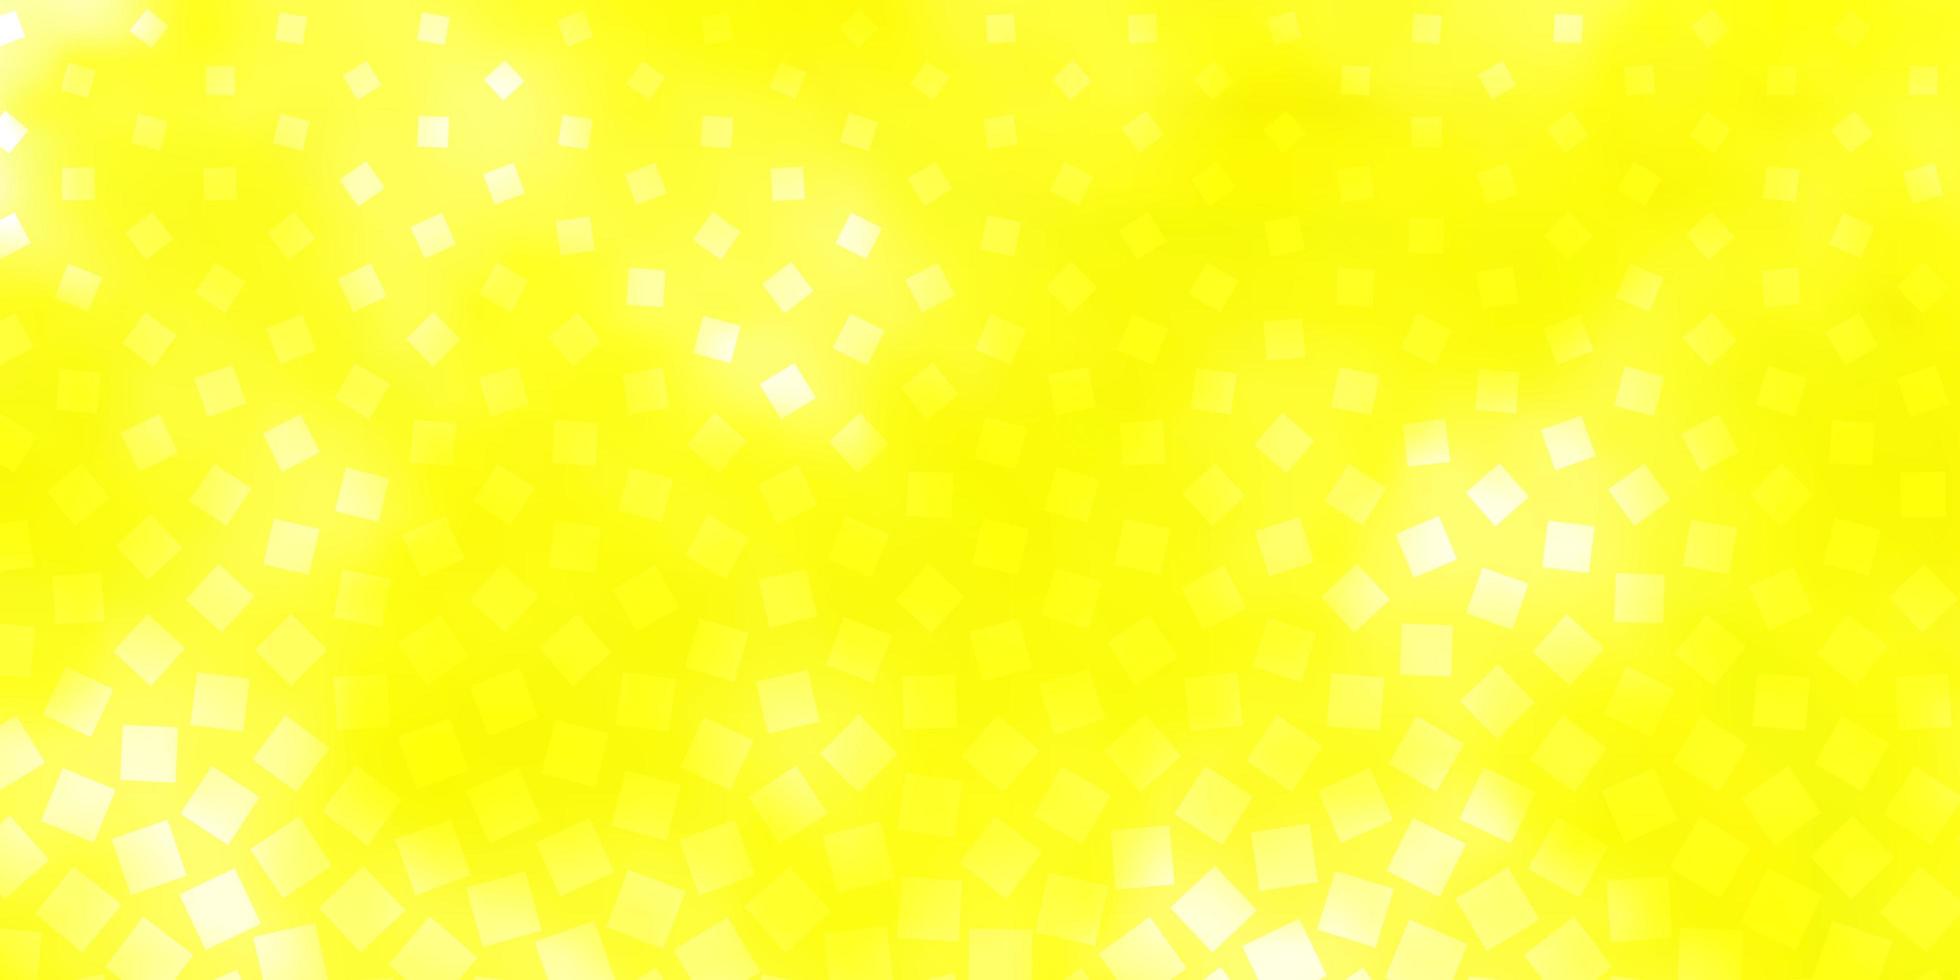 Fondo de vector amarillo claro con rectángulos.